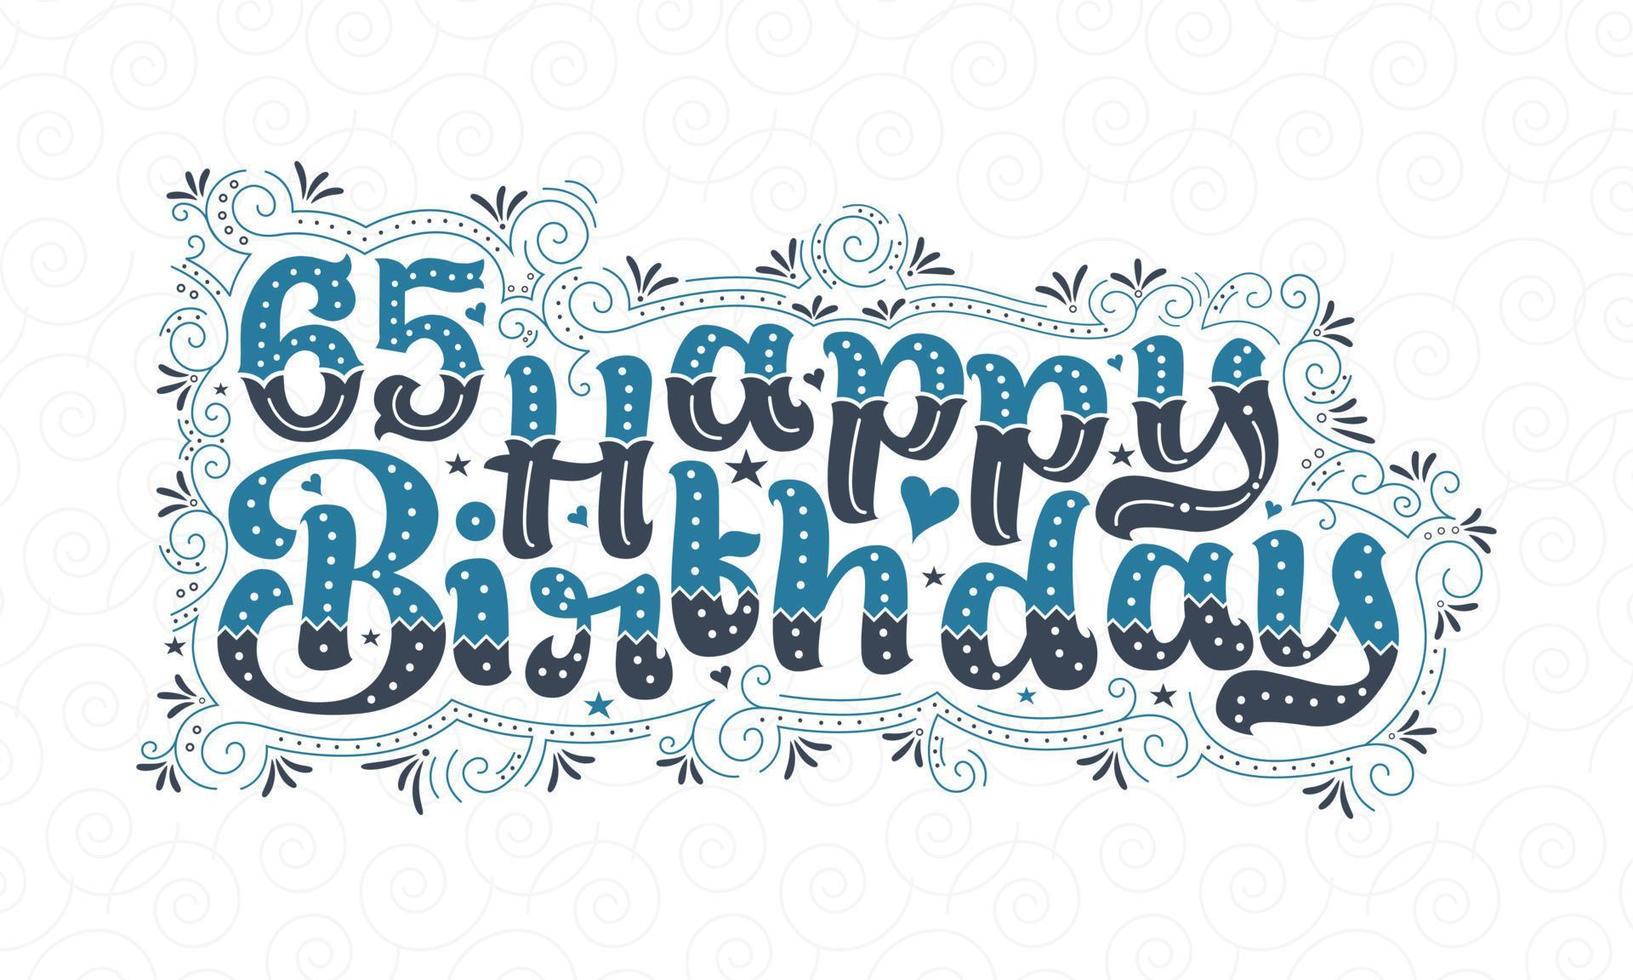 65e lettrage de joyeux anniversaire, 65 ans d'anniversaire belle conception de typographie avec des points, des lignes et des feuilles bleus et noirs. vecteur